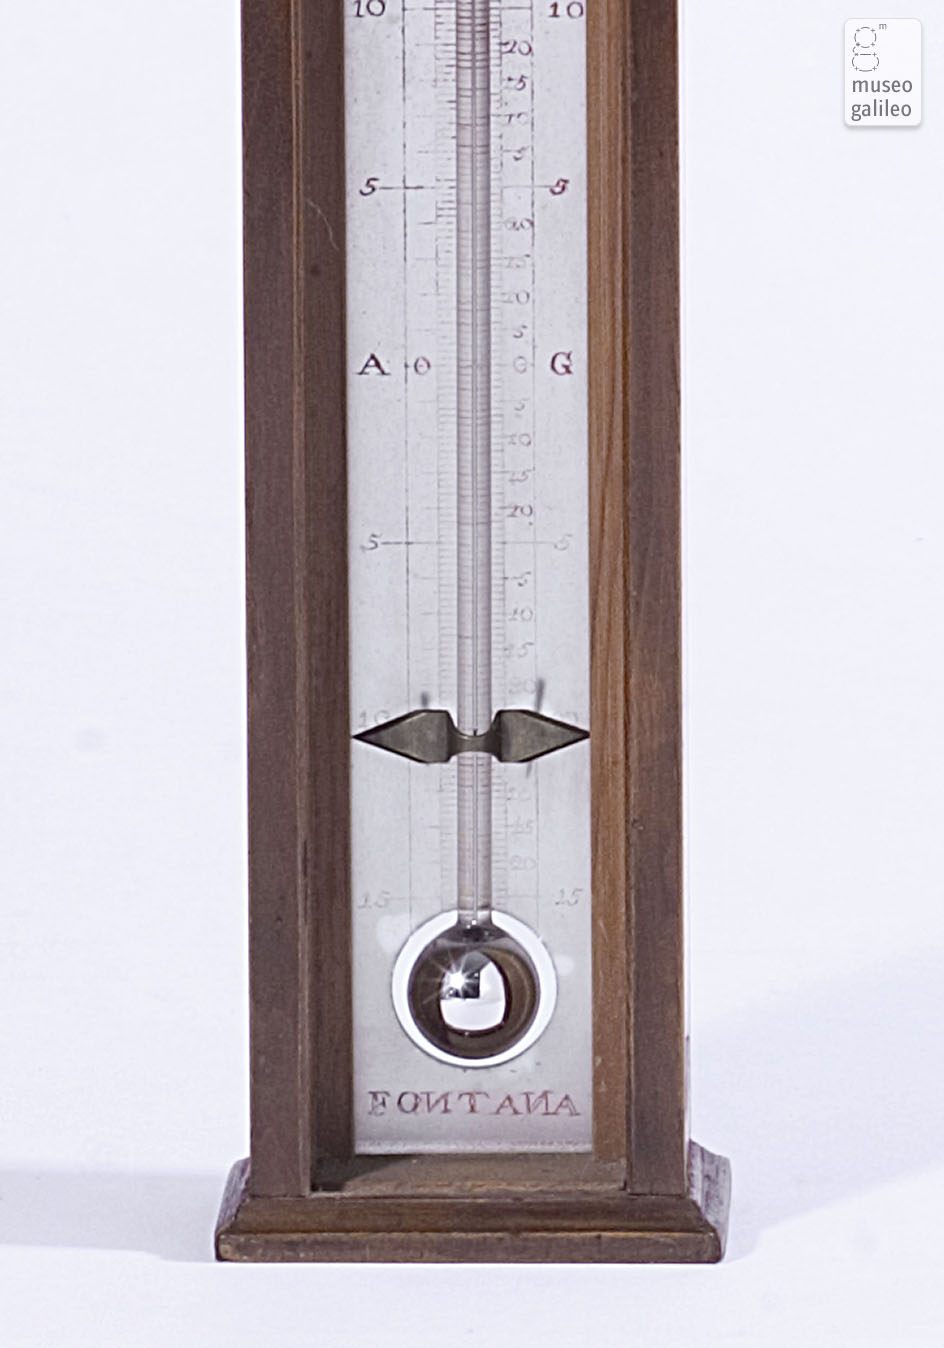 Termometro a mercurio (Inv. 3464)